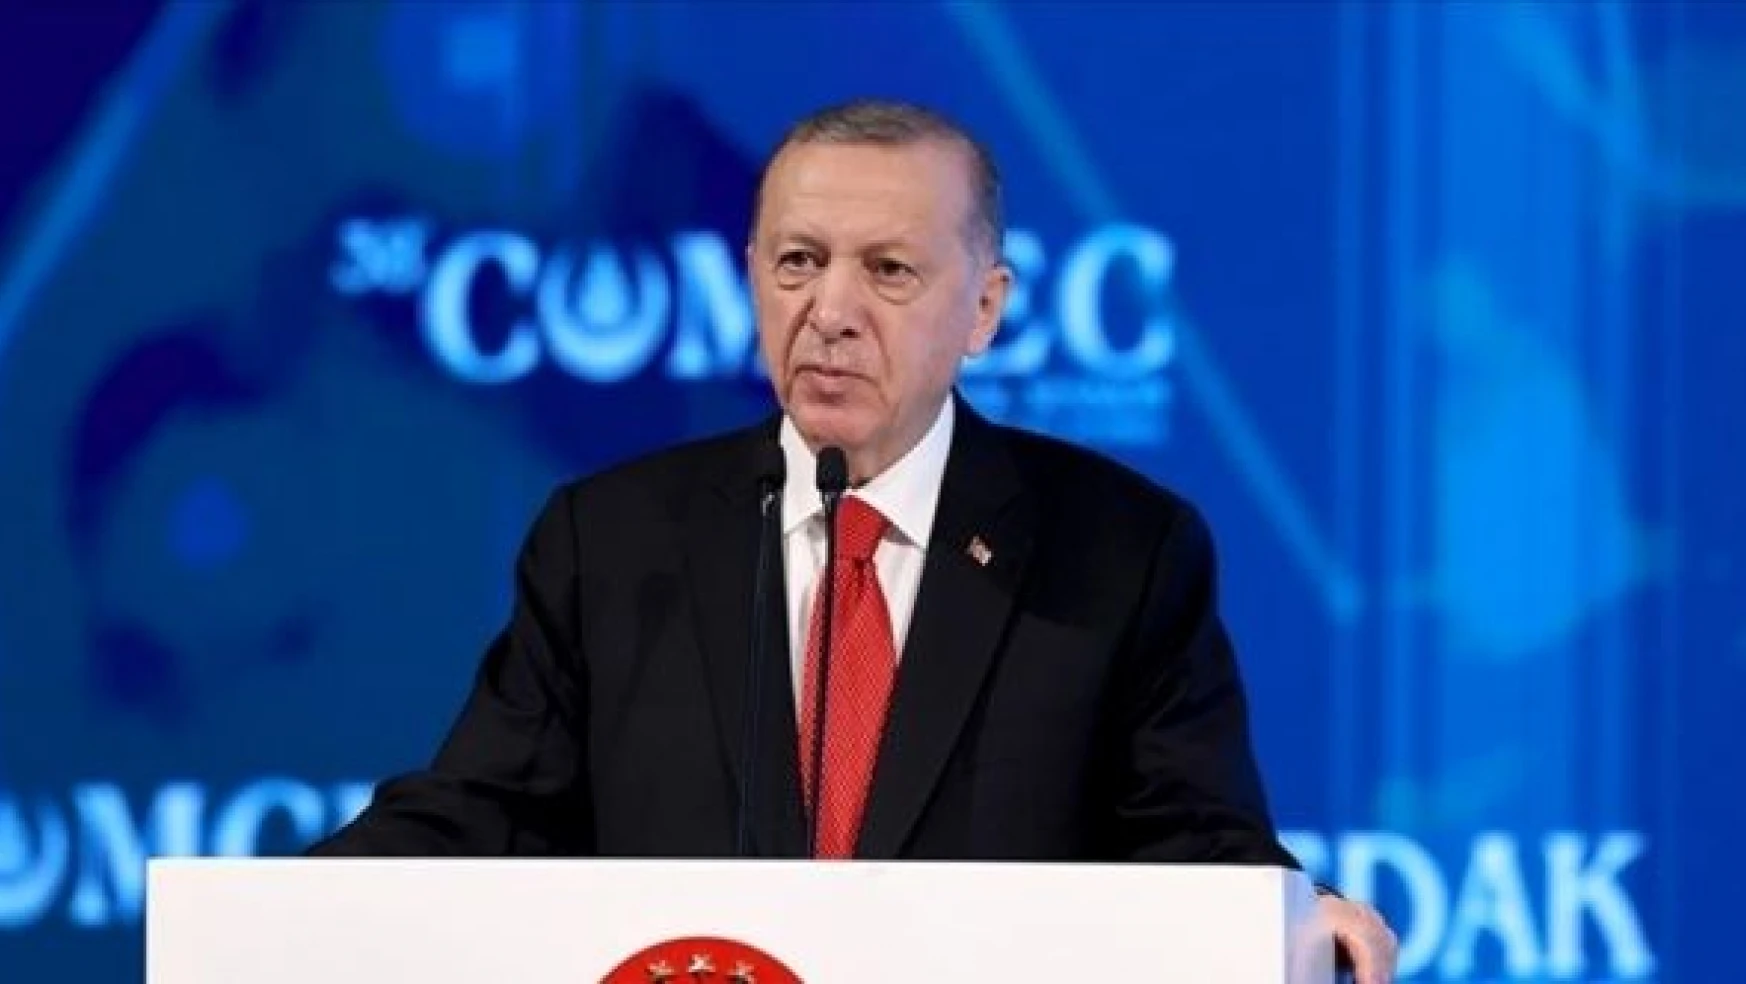 Erdoğan: &quotBizim kardeşliğimiz her türlü anlaşmazlığın üstesinden gelecek güce sahiptir"